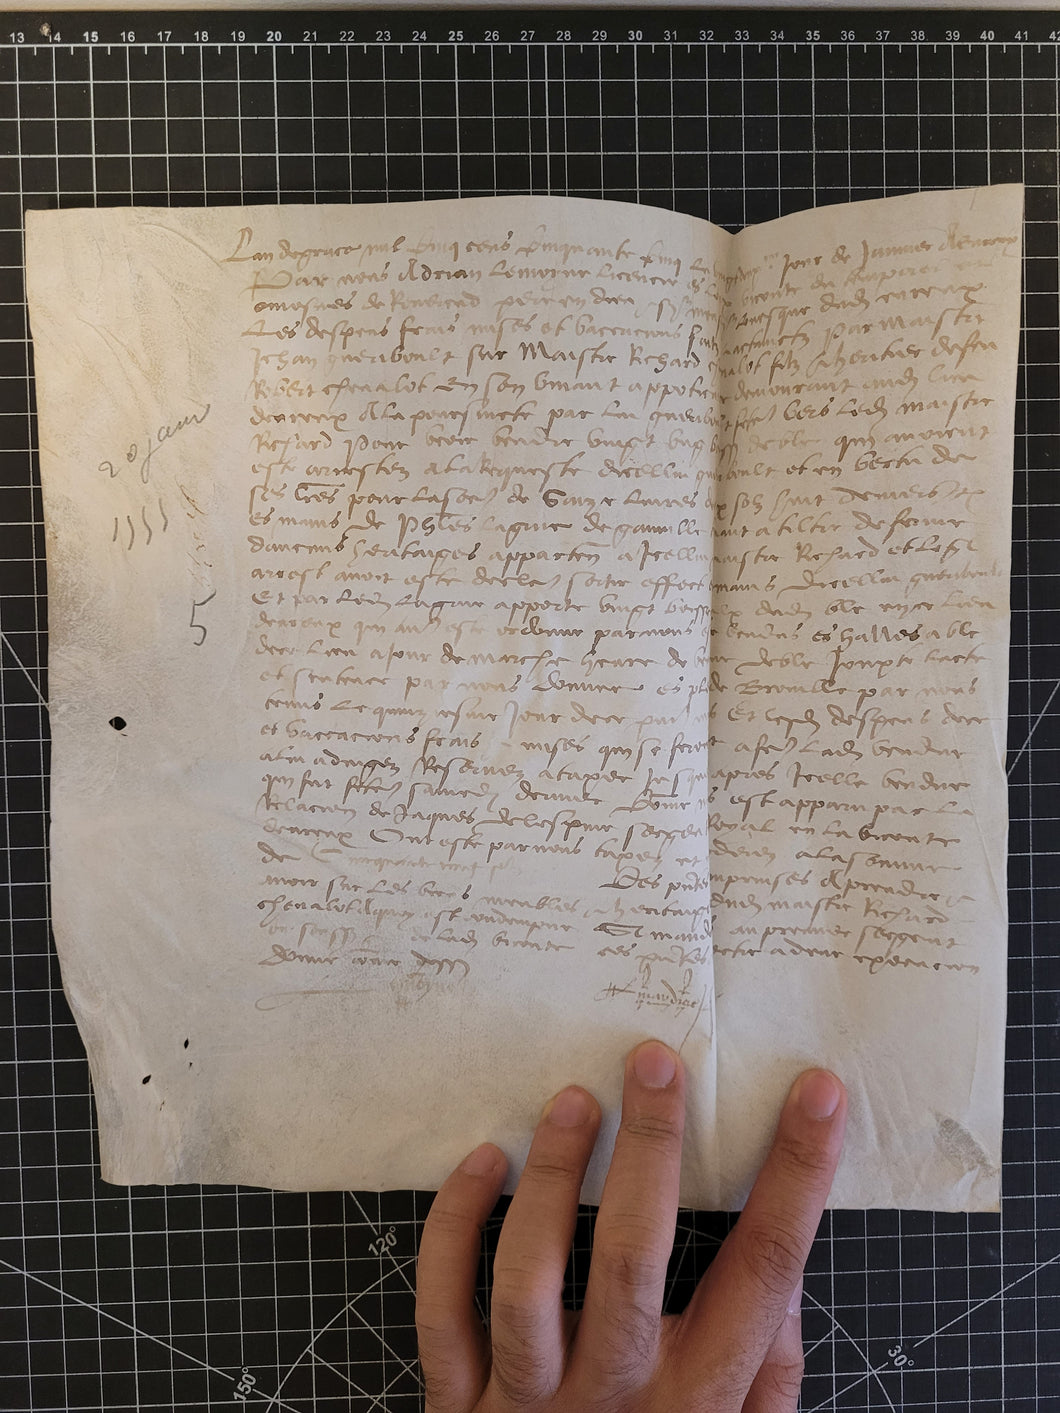 Renaissance Charter. Manuscript on Parchment, January 20 1555